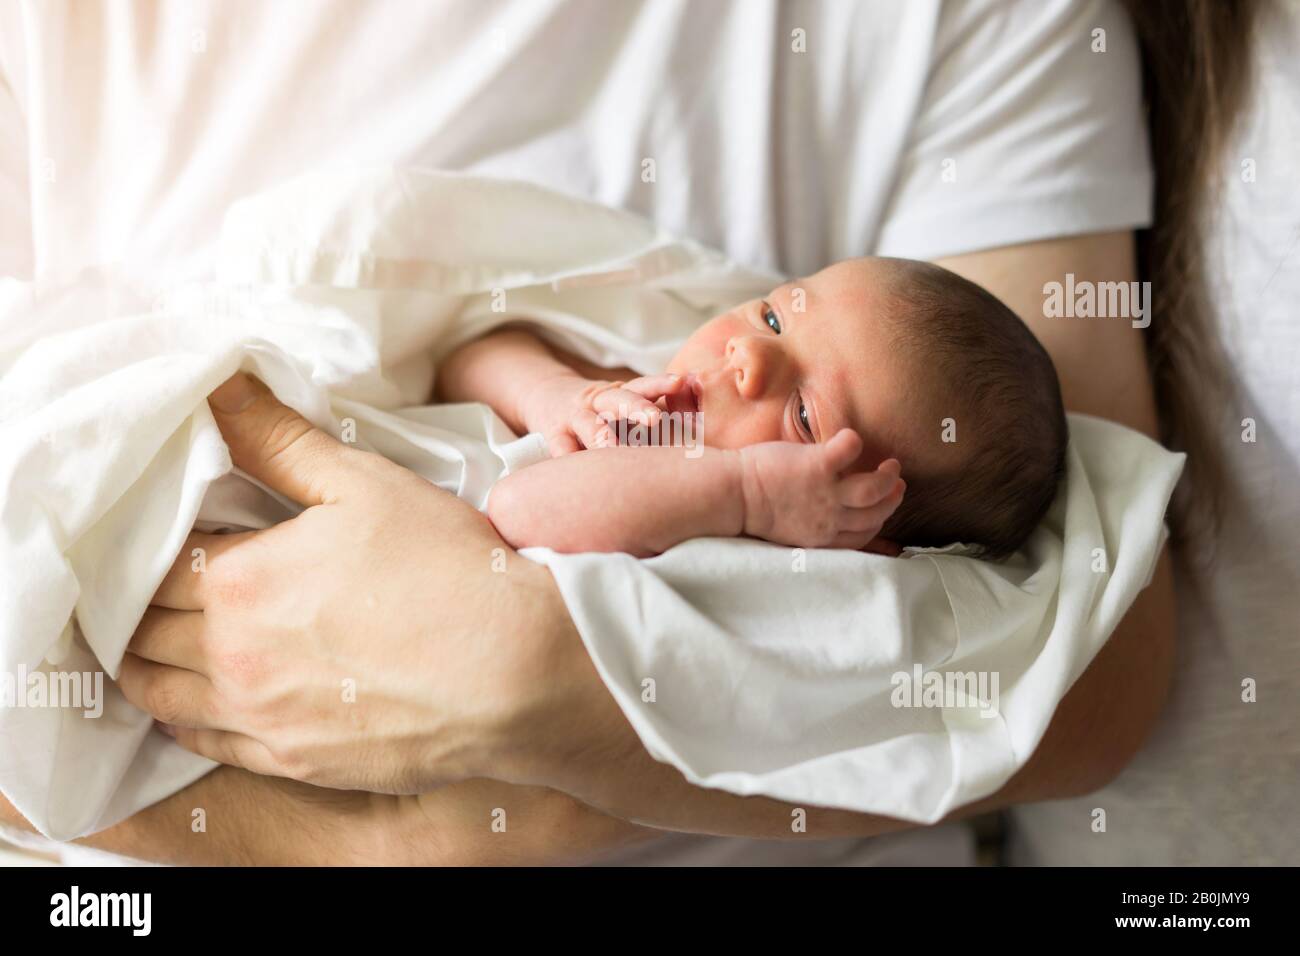 Vater hält nackt neugeborenen Sohn in seine Hände in einem weißen Windel Stockfoto